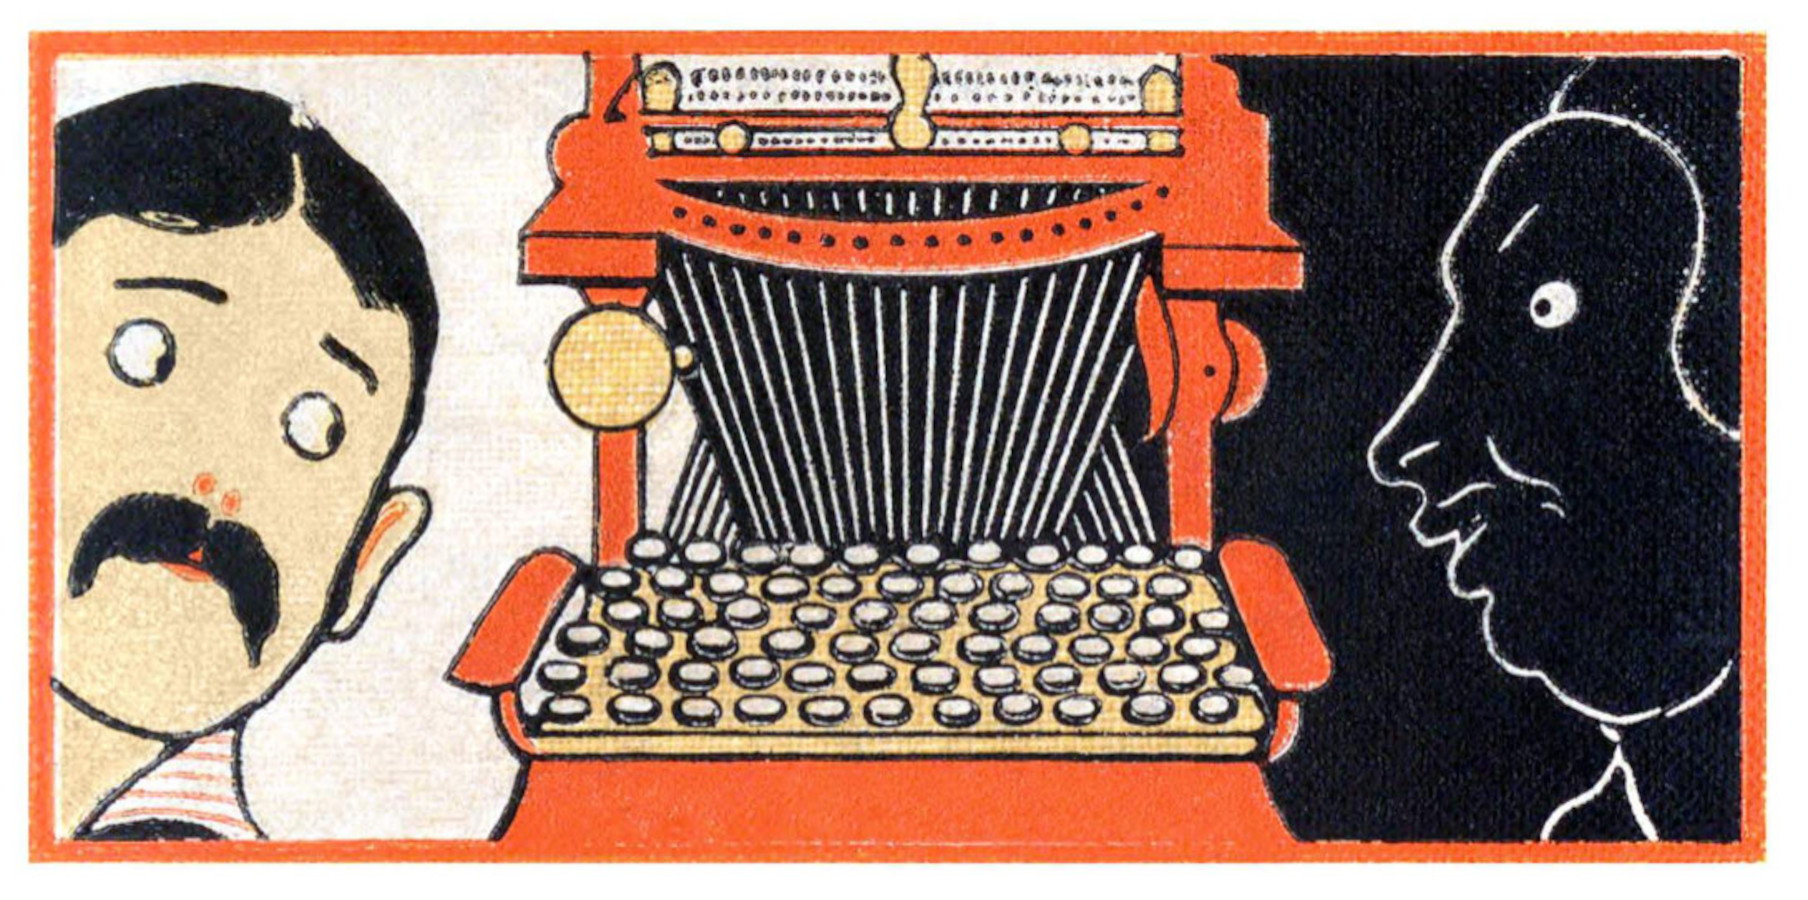 Eine alte Buchillustration mit einer Schreibmaschine in der Mitte.